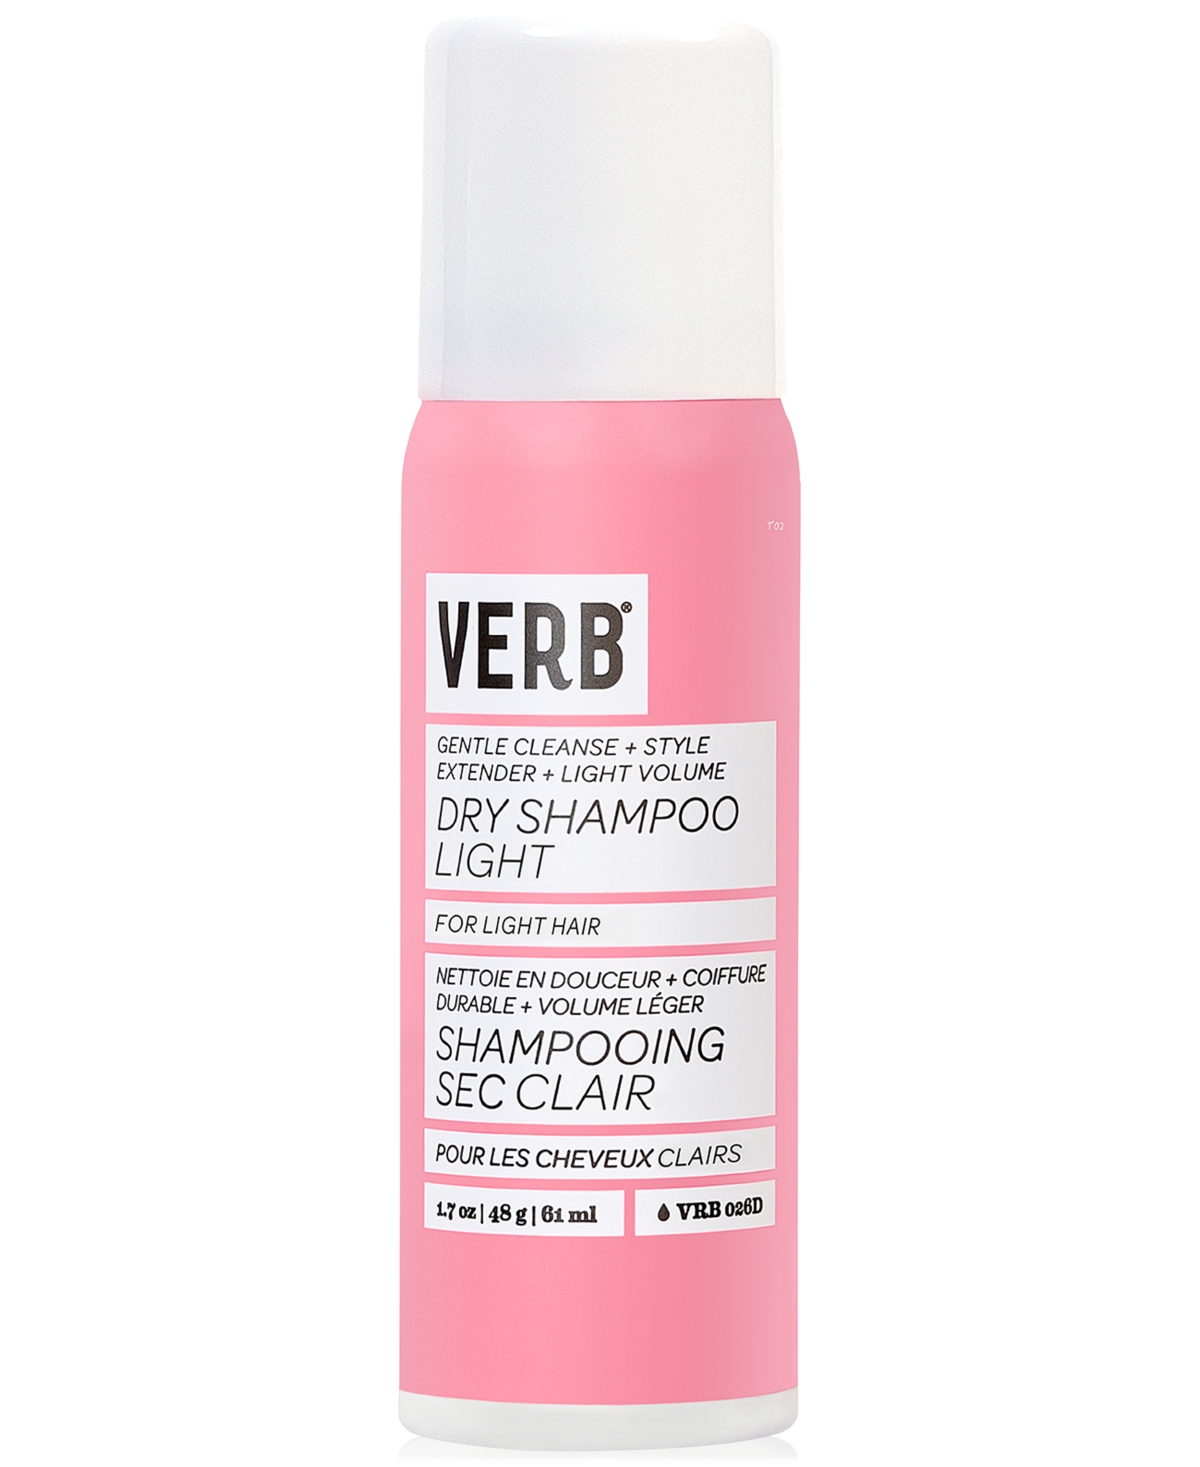 Verb Dry Shampoo Light, 1.7 Oz. In No Color